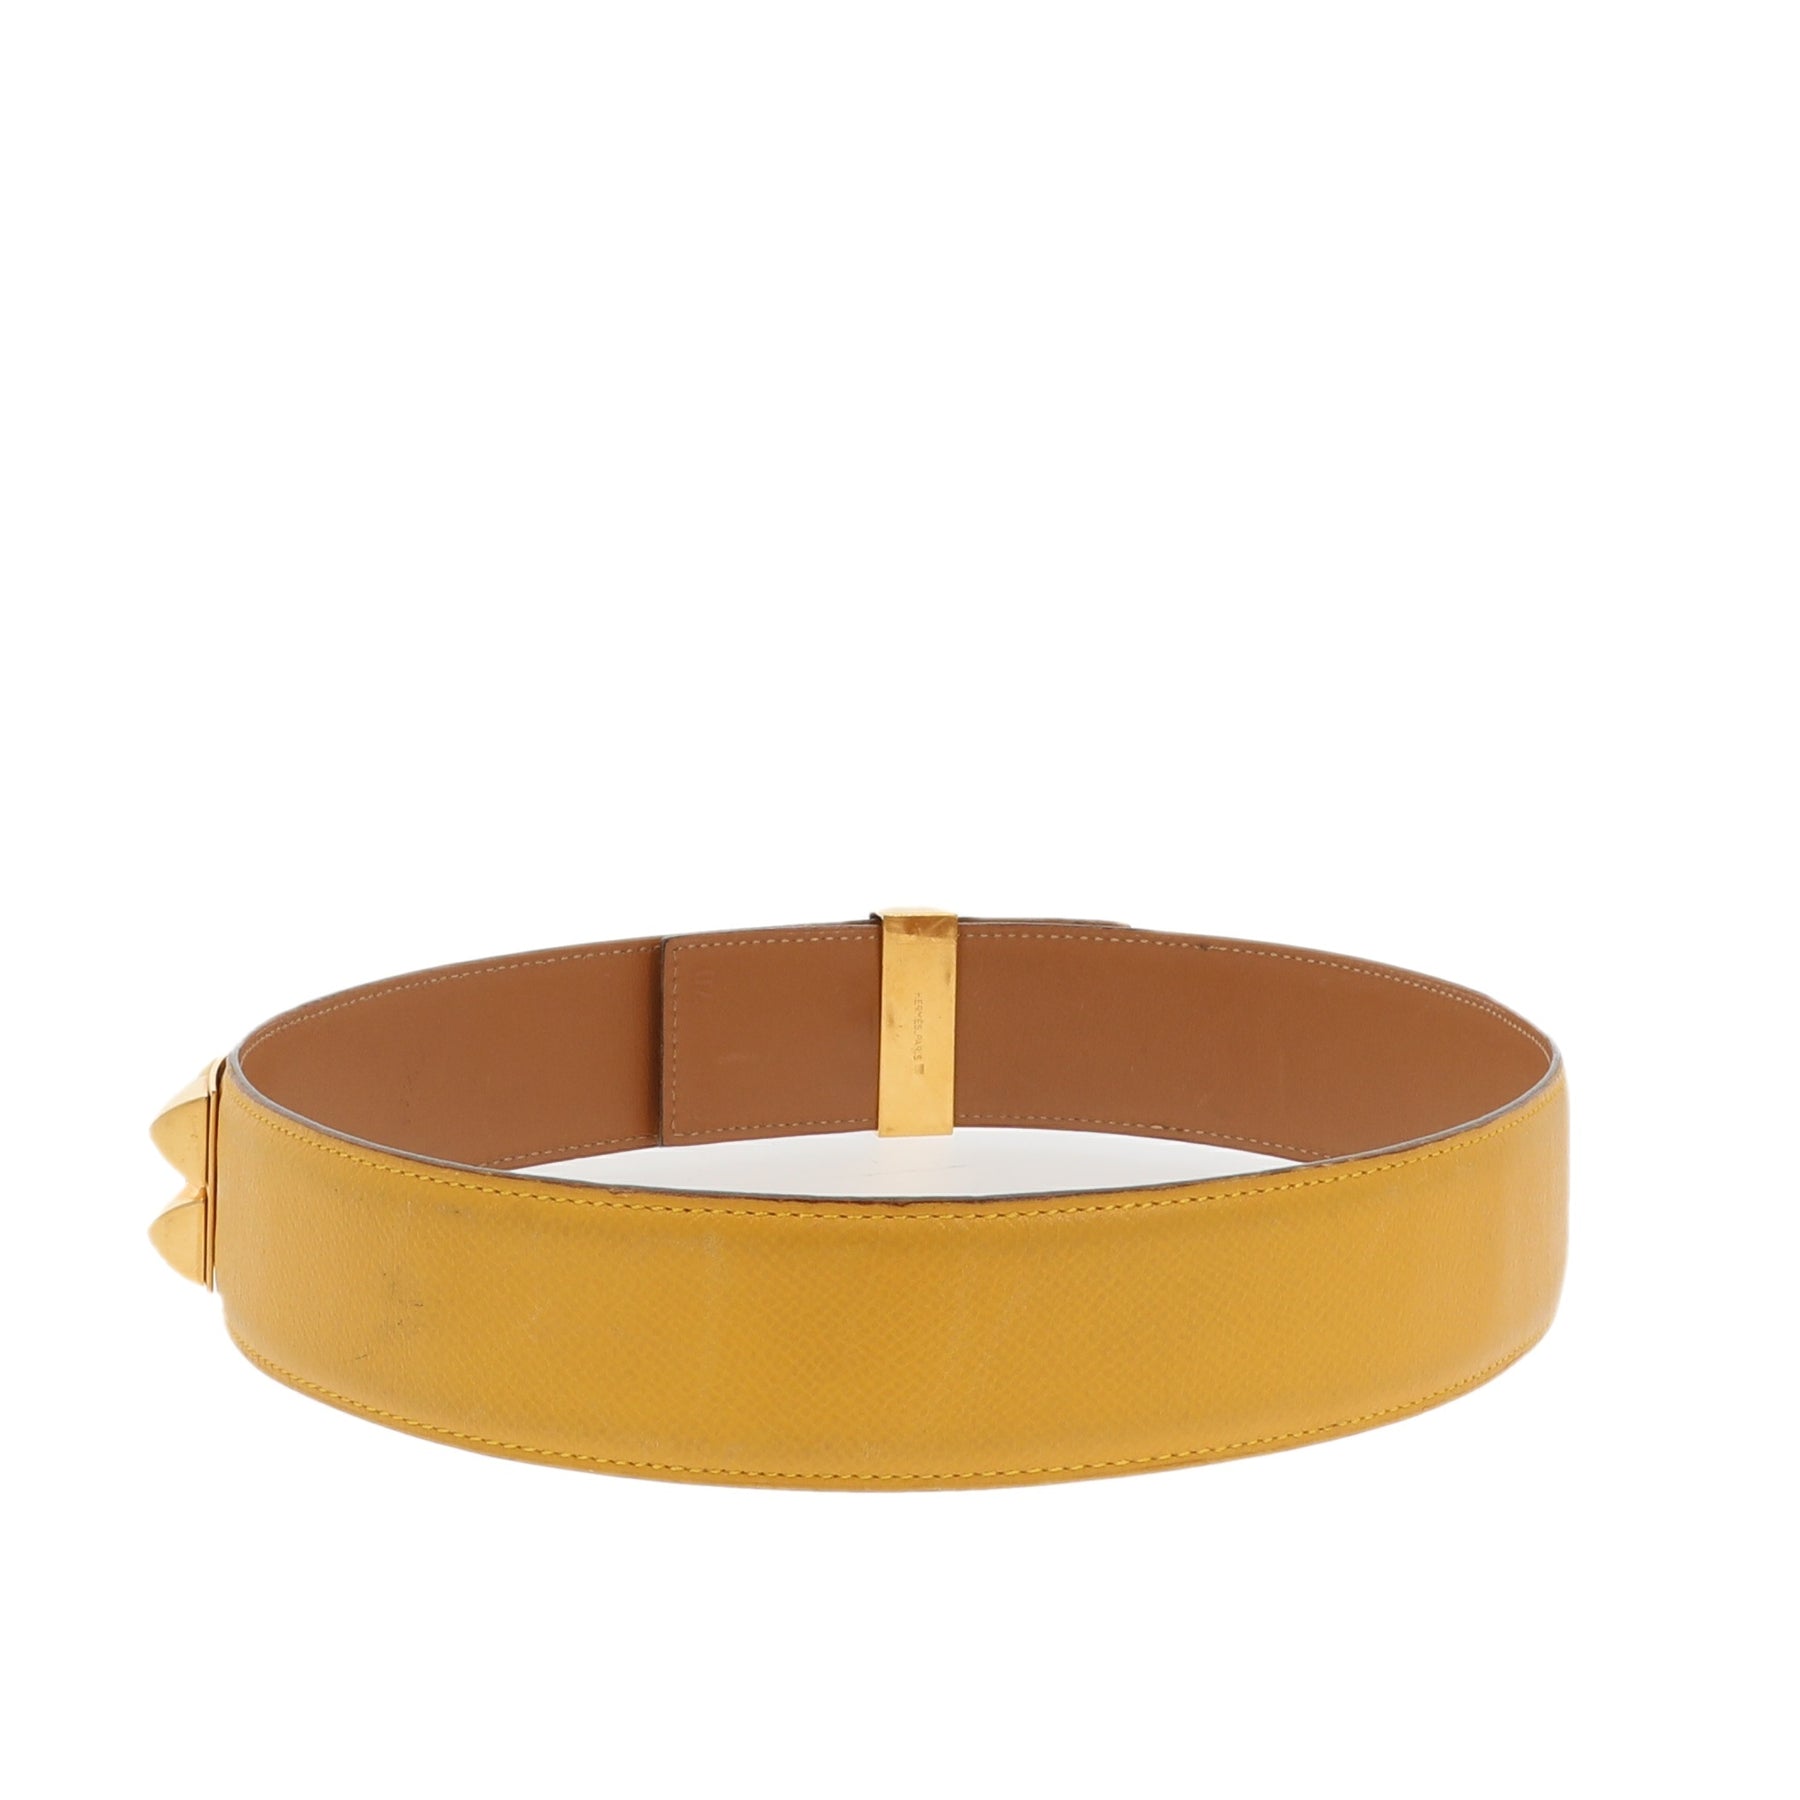 Hermès Collier De Chien Belt 70 Epsom Gold Leather with Gold Hardware –  Luxury GoRound